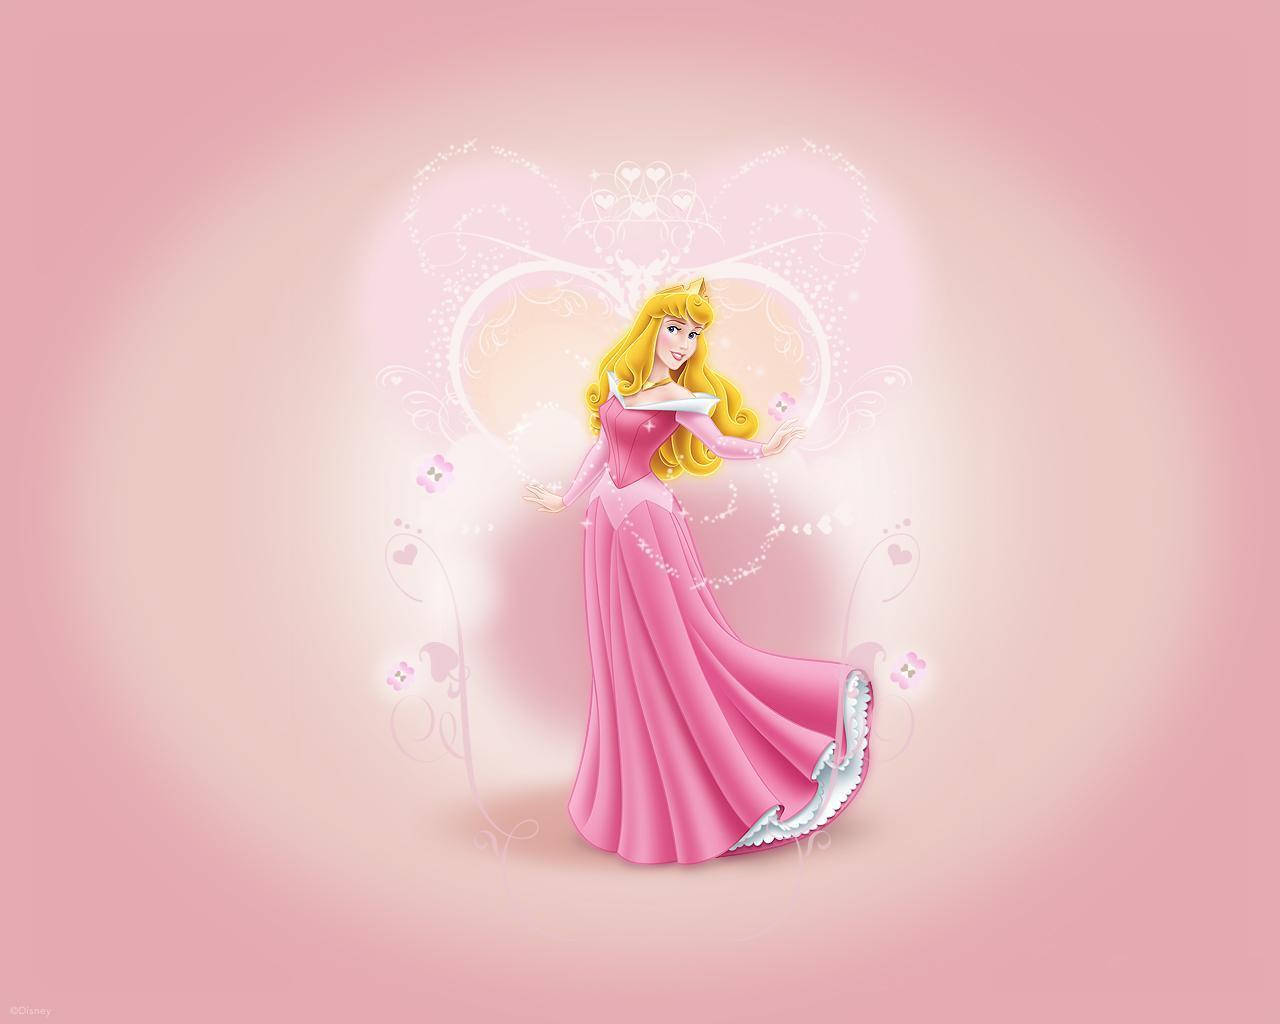 Oplev magien fra en klassisk Disney Prinsesse med en moderne drejning. Wallpaper